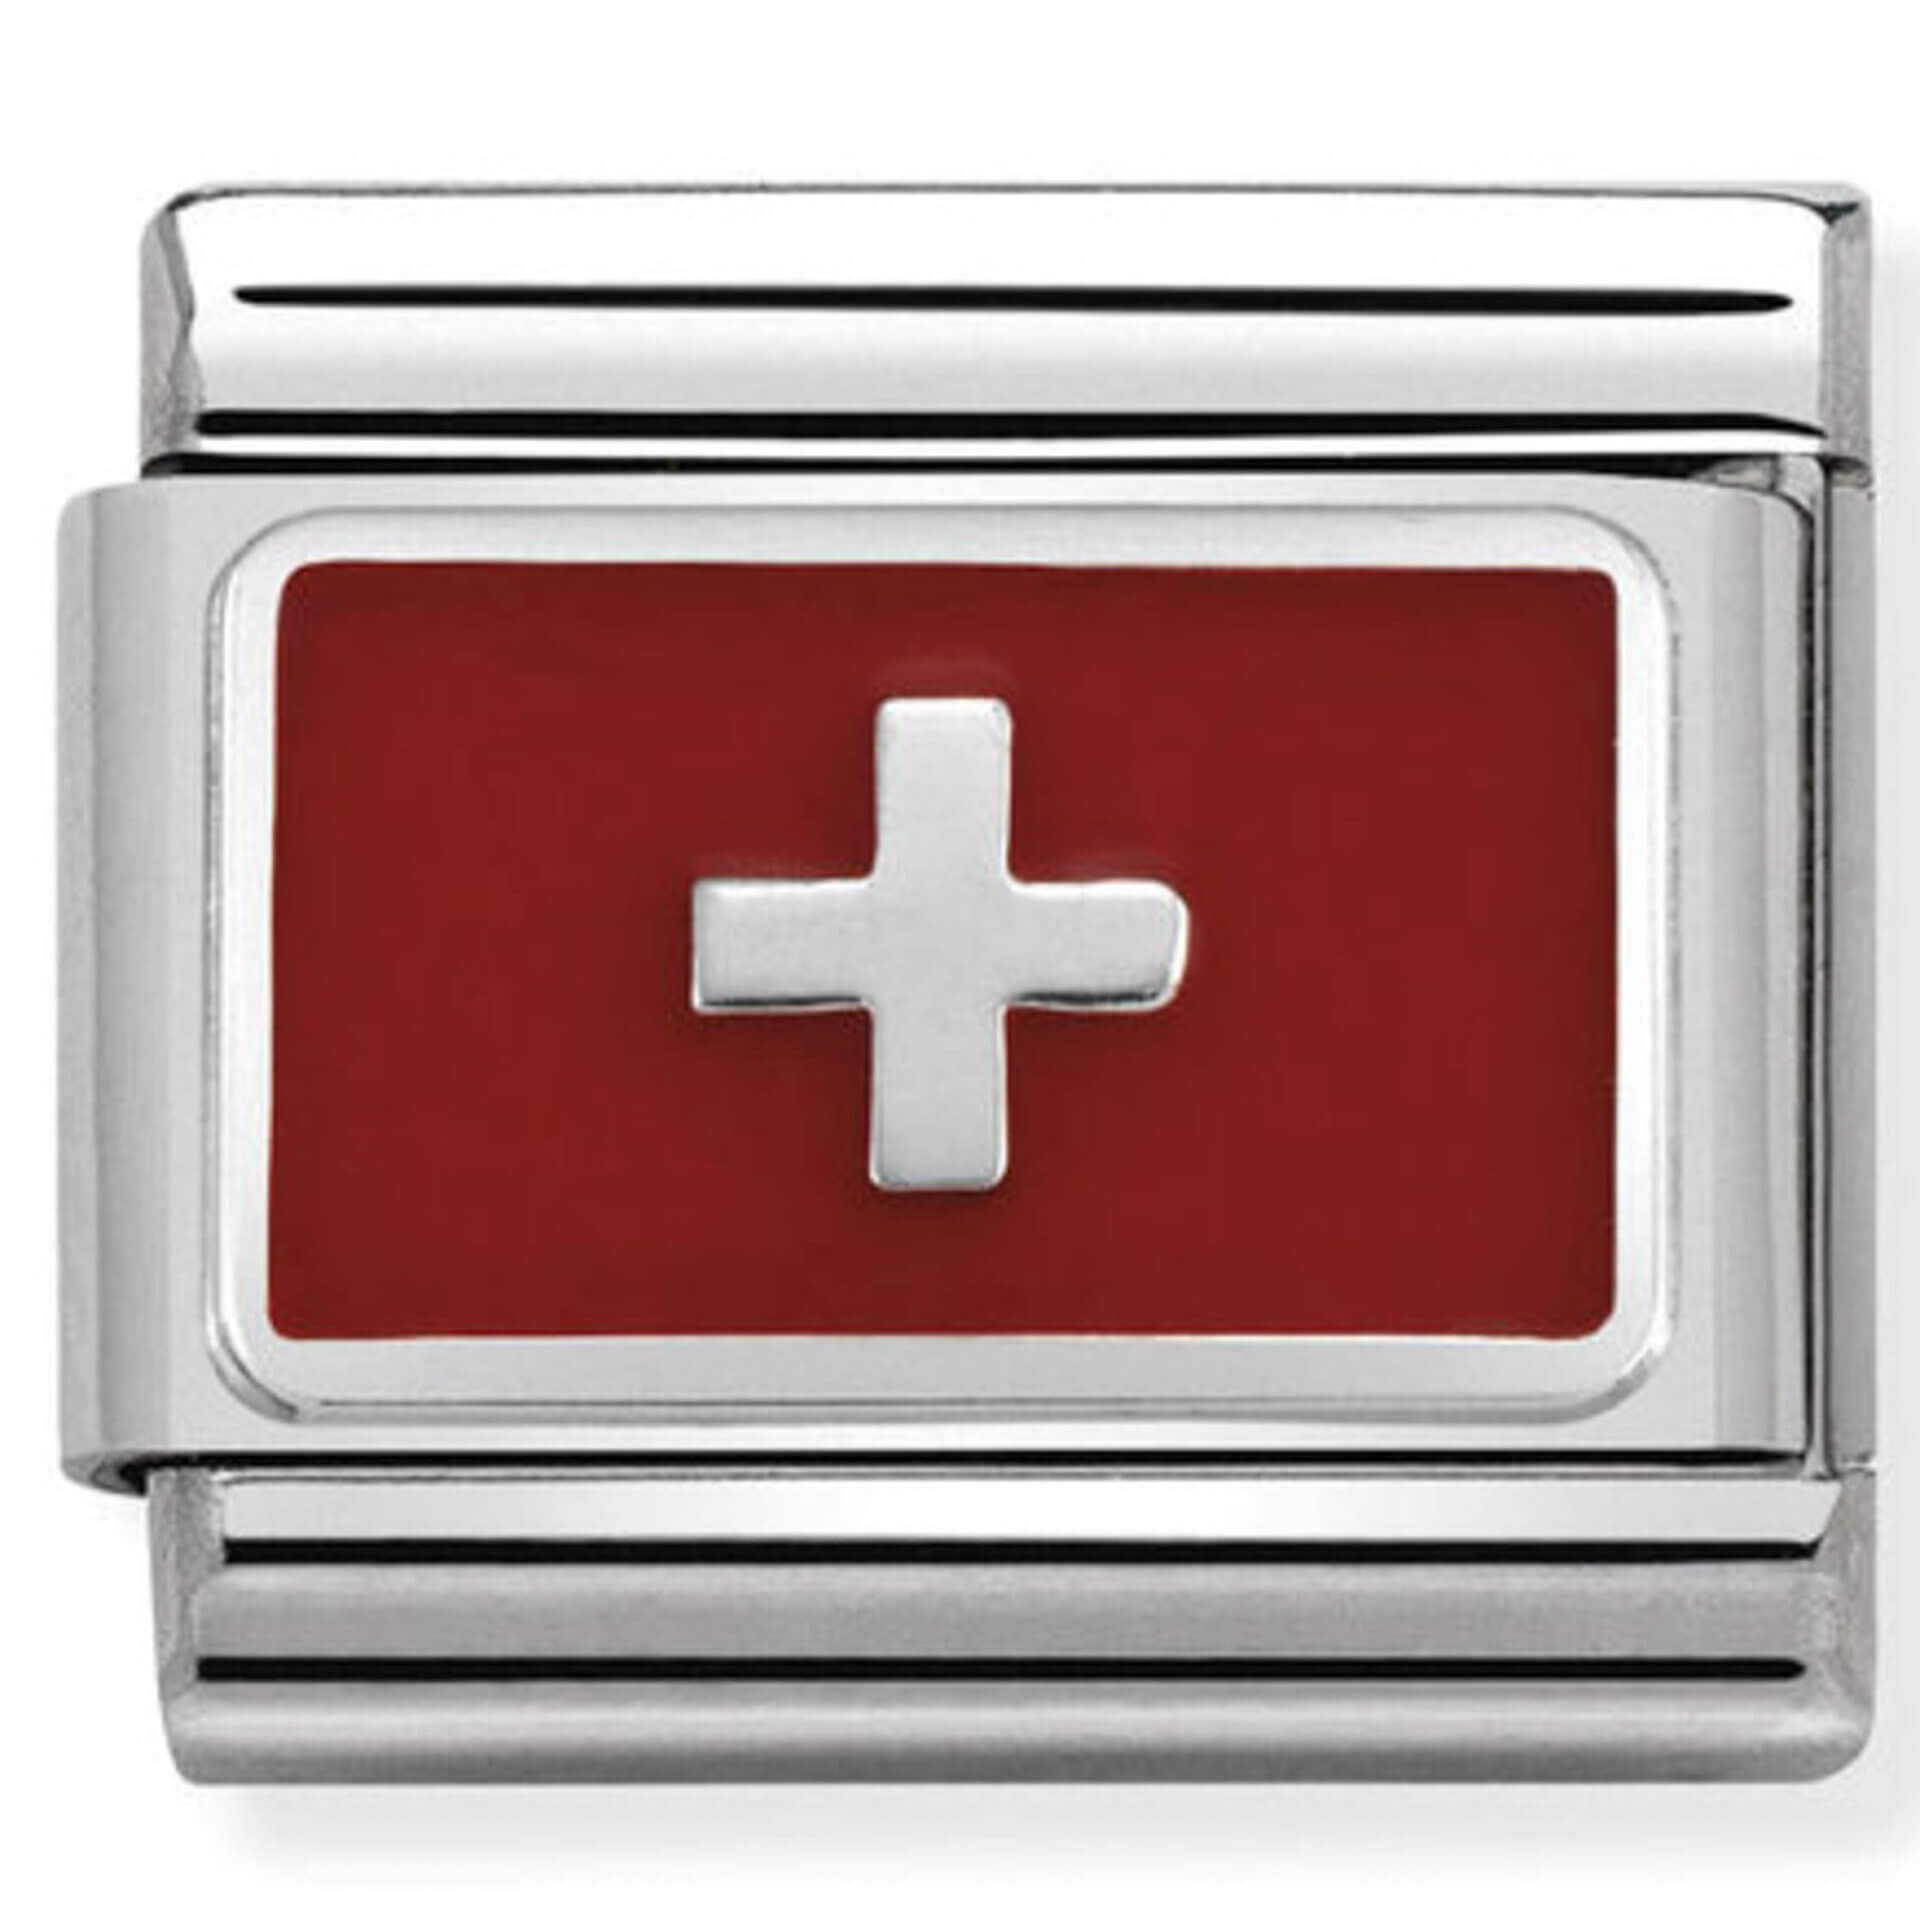 Nomination Silver Switzerland